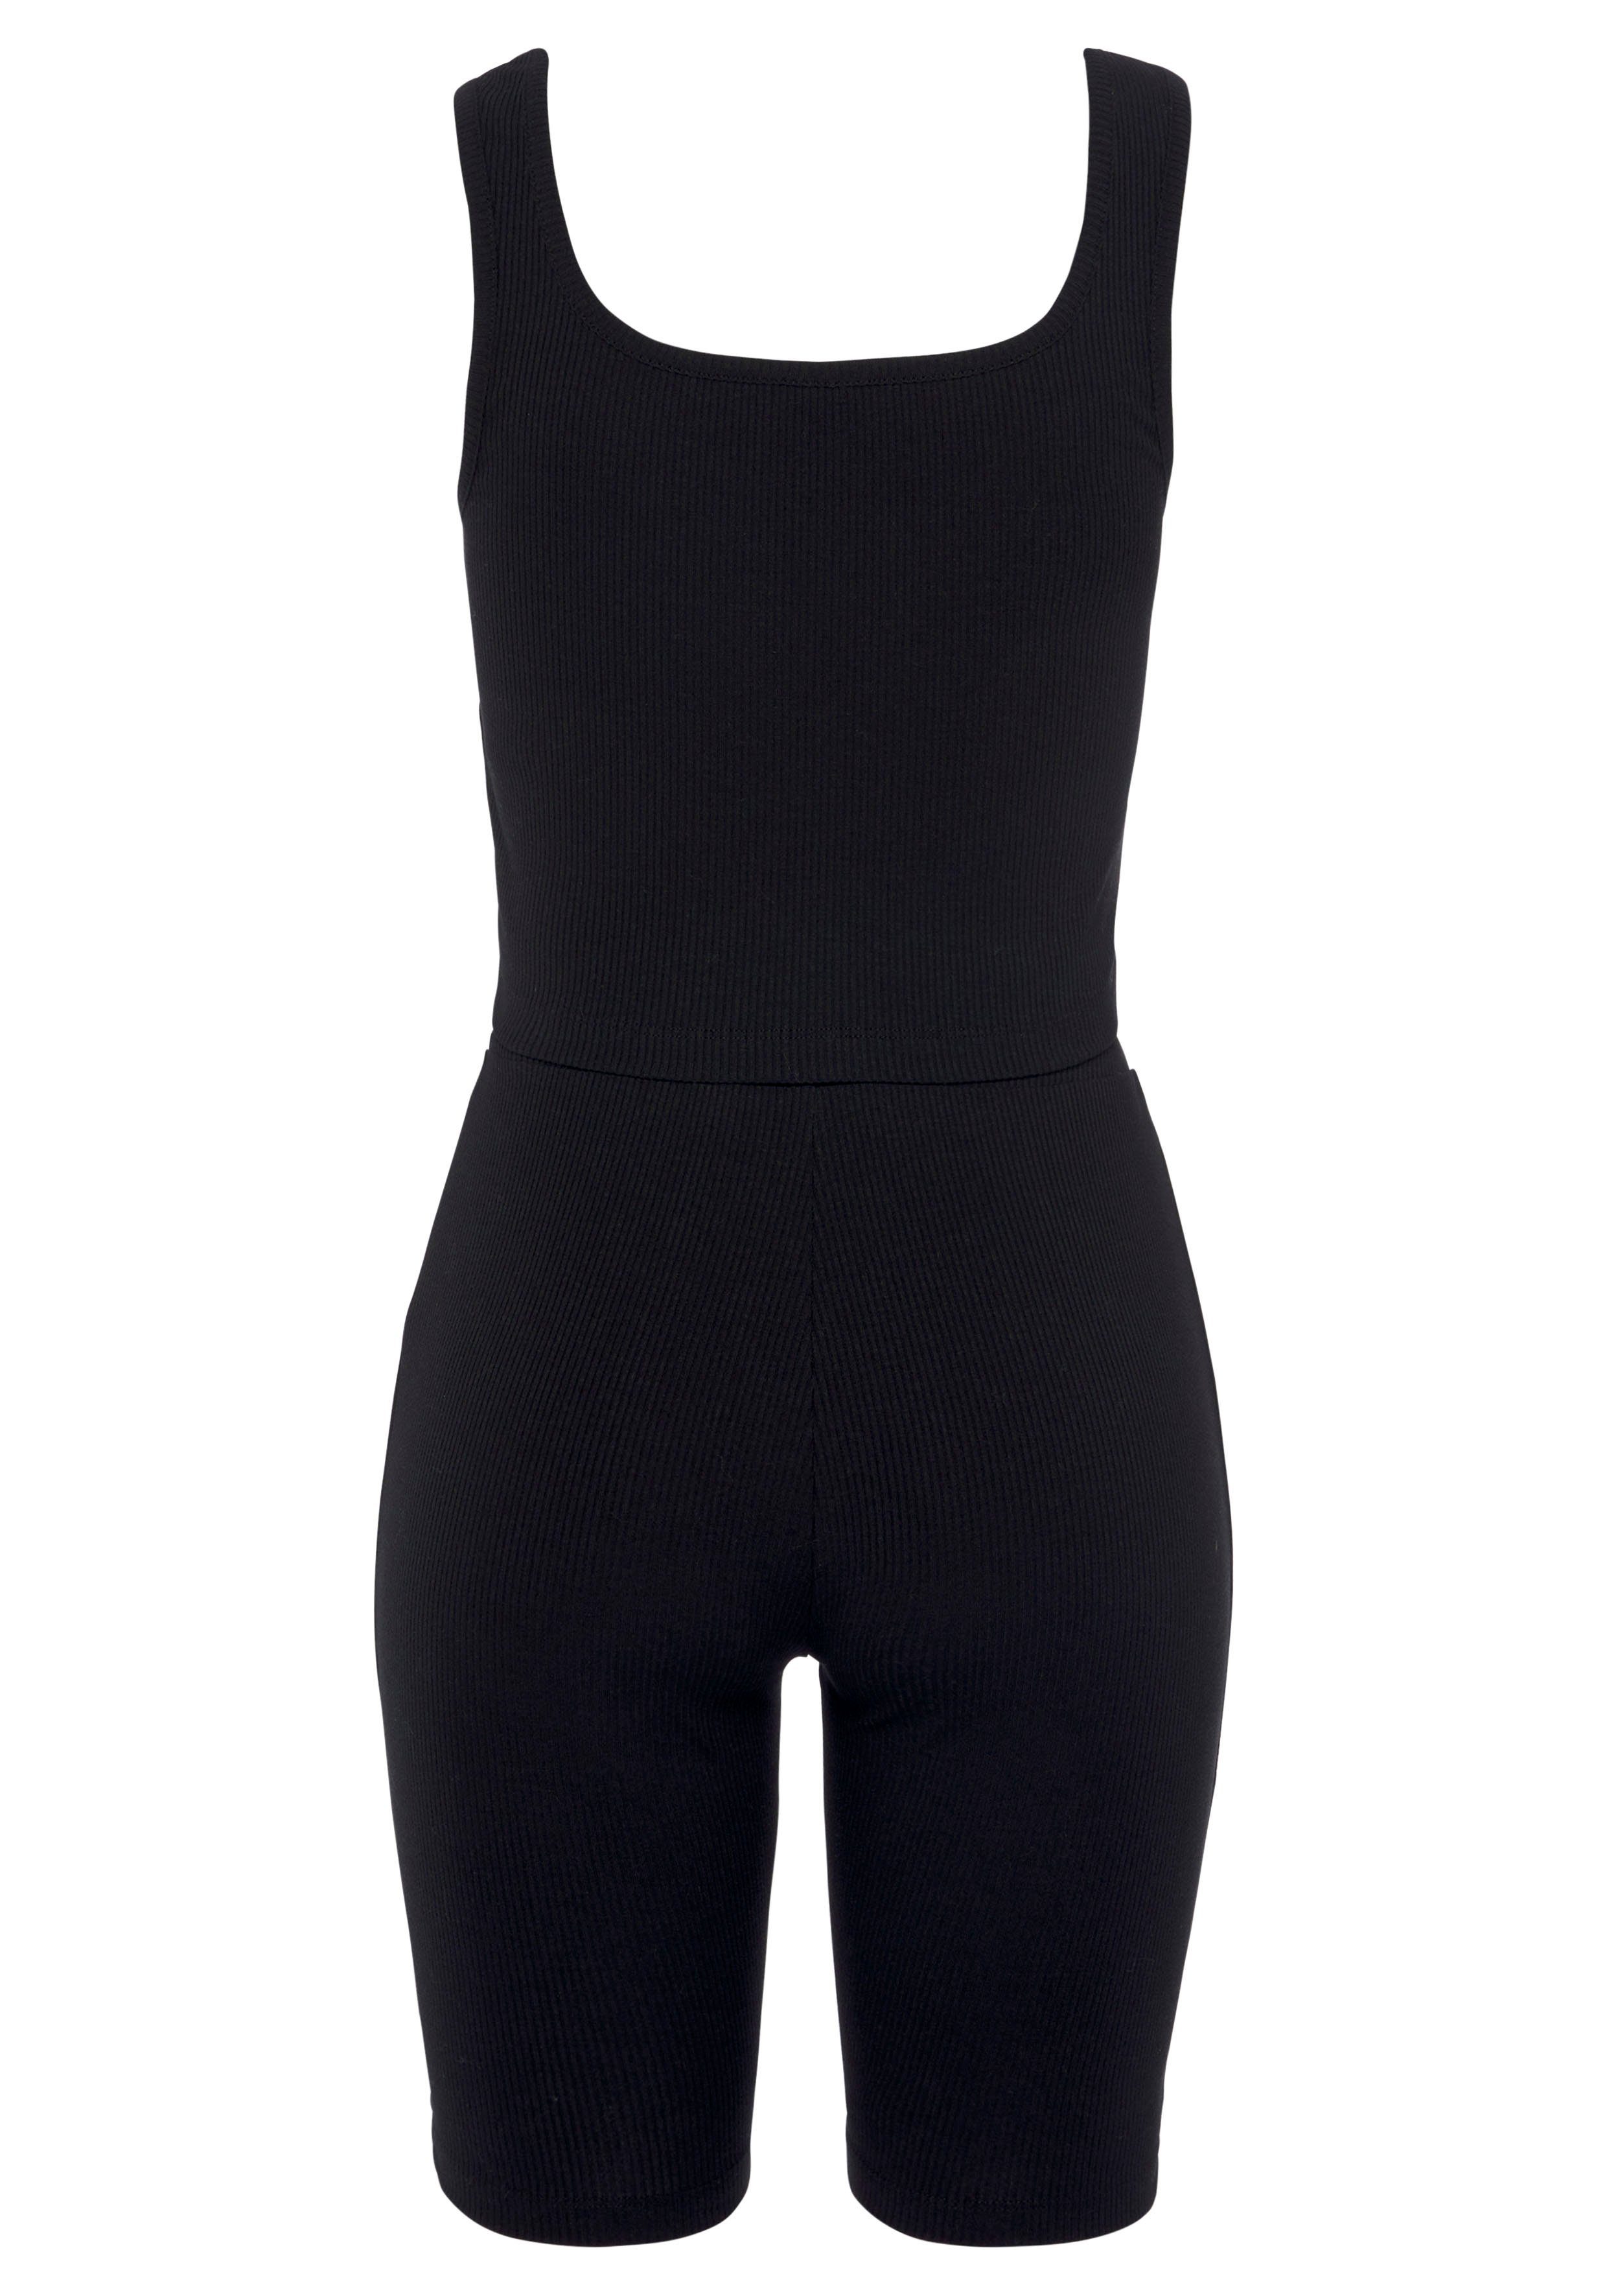 LASCANA Radlerhose mit passendem Top schwarz Homewear-Set Rippmaterial, aus